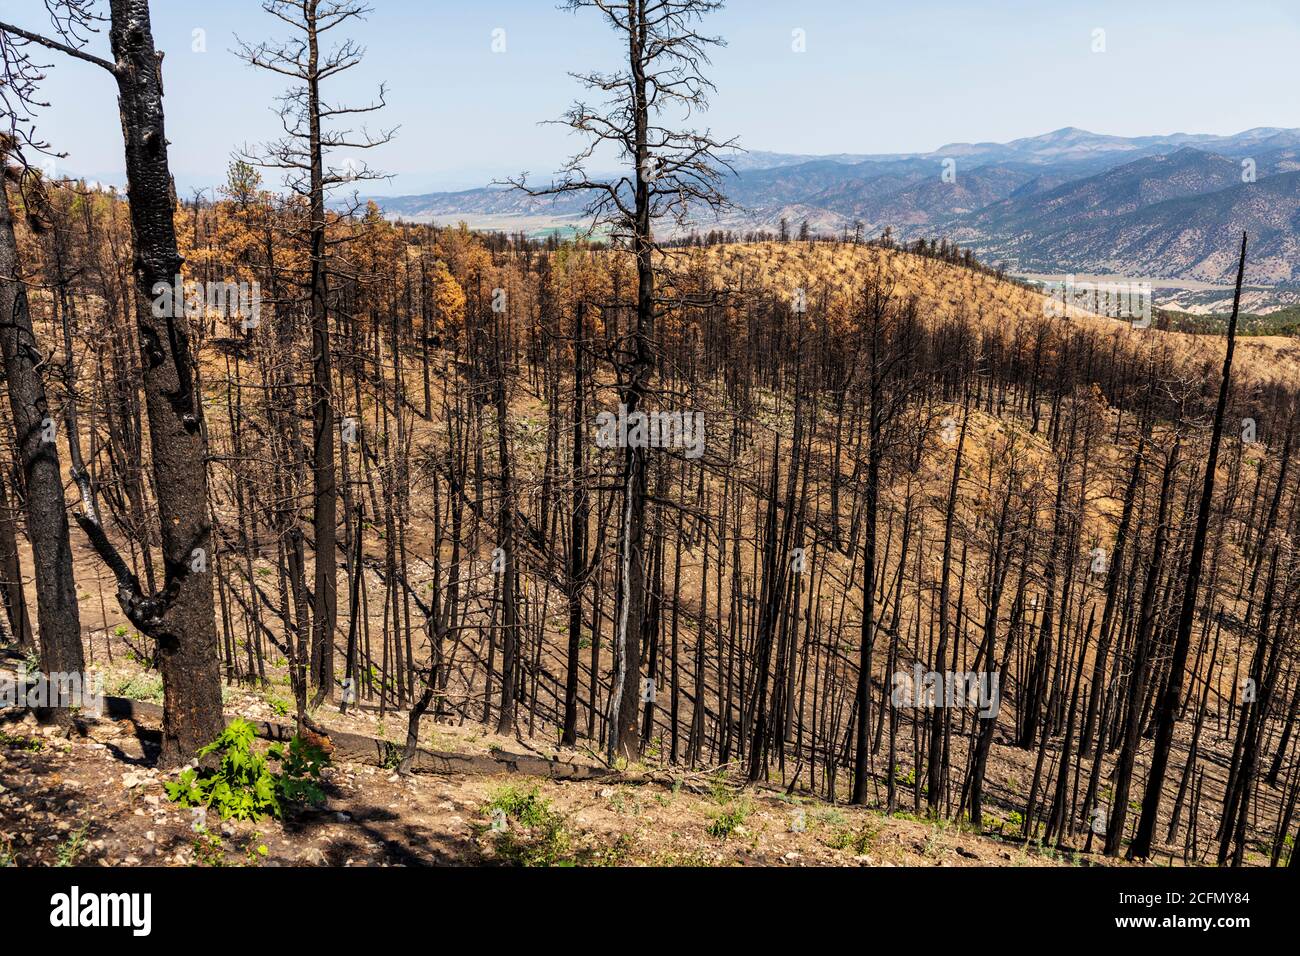 Régénération des arbres et des plantes qui brûlaient dans les feux de forêt ; montagnes Rocheuses, Colorado central, États-Unis Banque D'Images